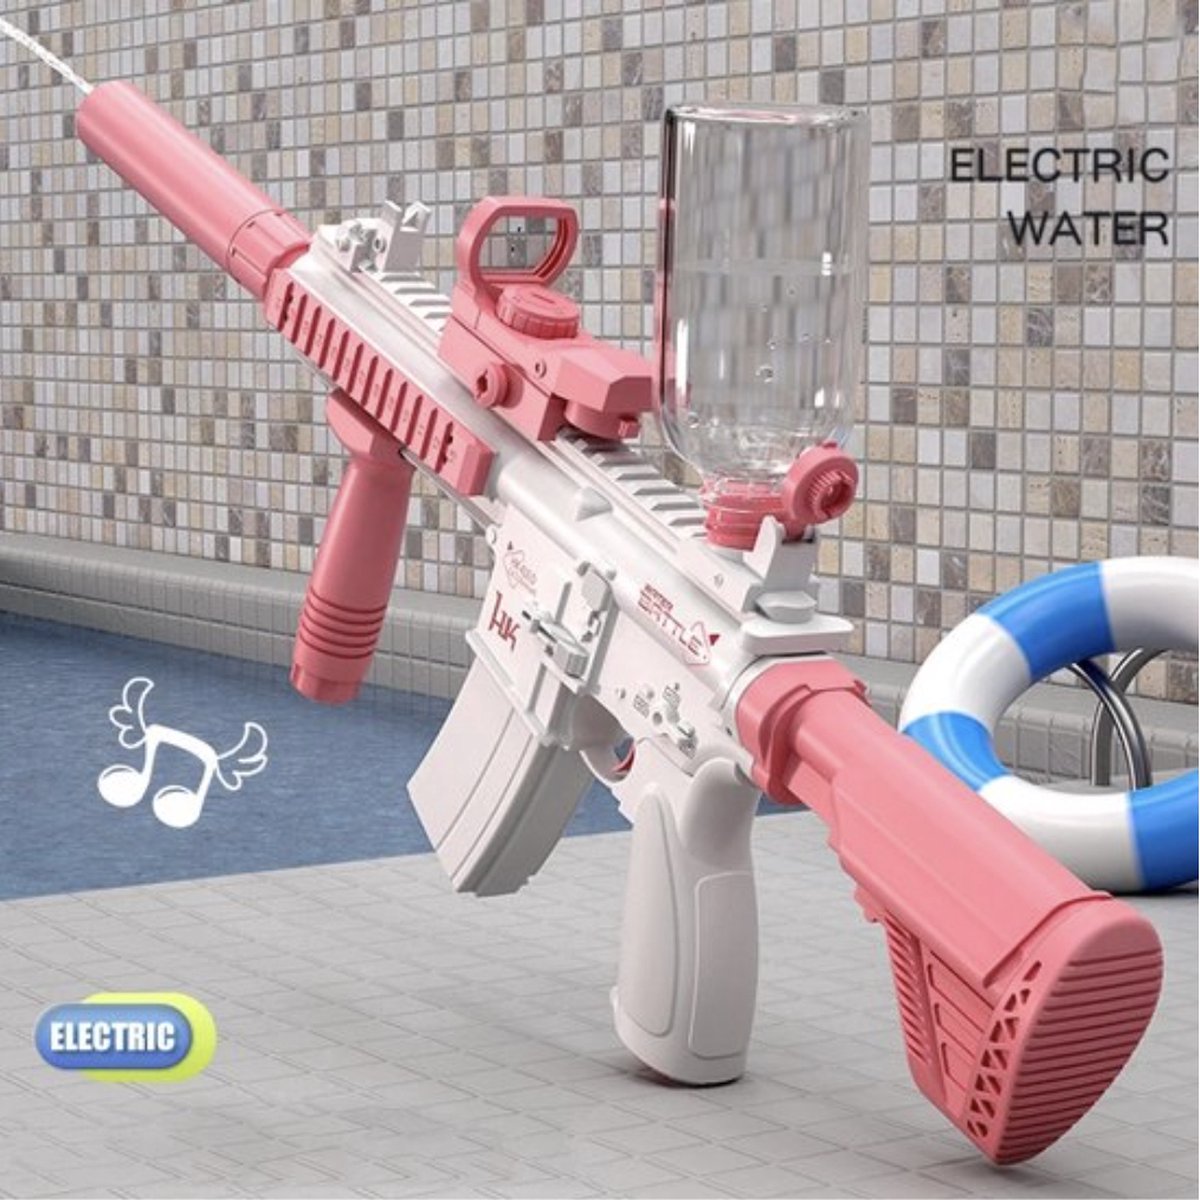 Waterpistool - Elektrisch - Krachtig - Lichtgewicht - Watergeweer - Zwembad speelgoed - Roze/wit